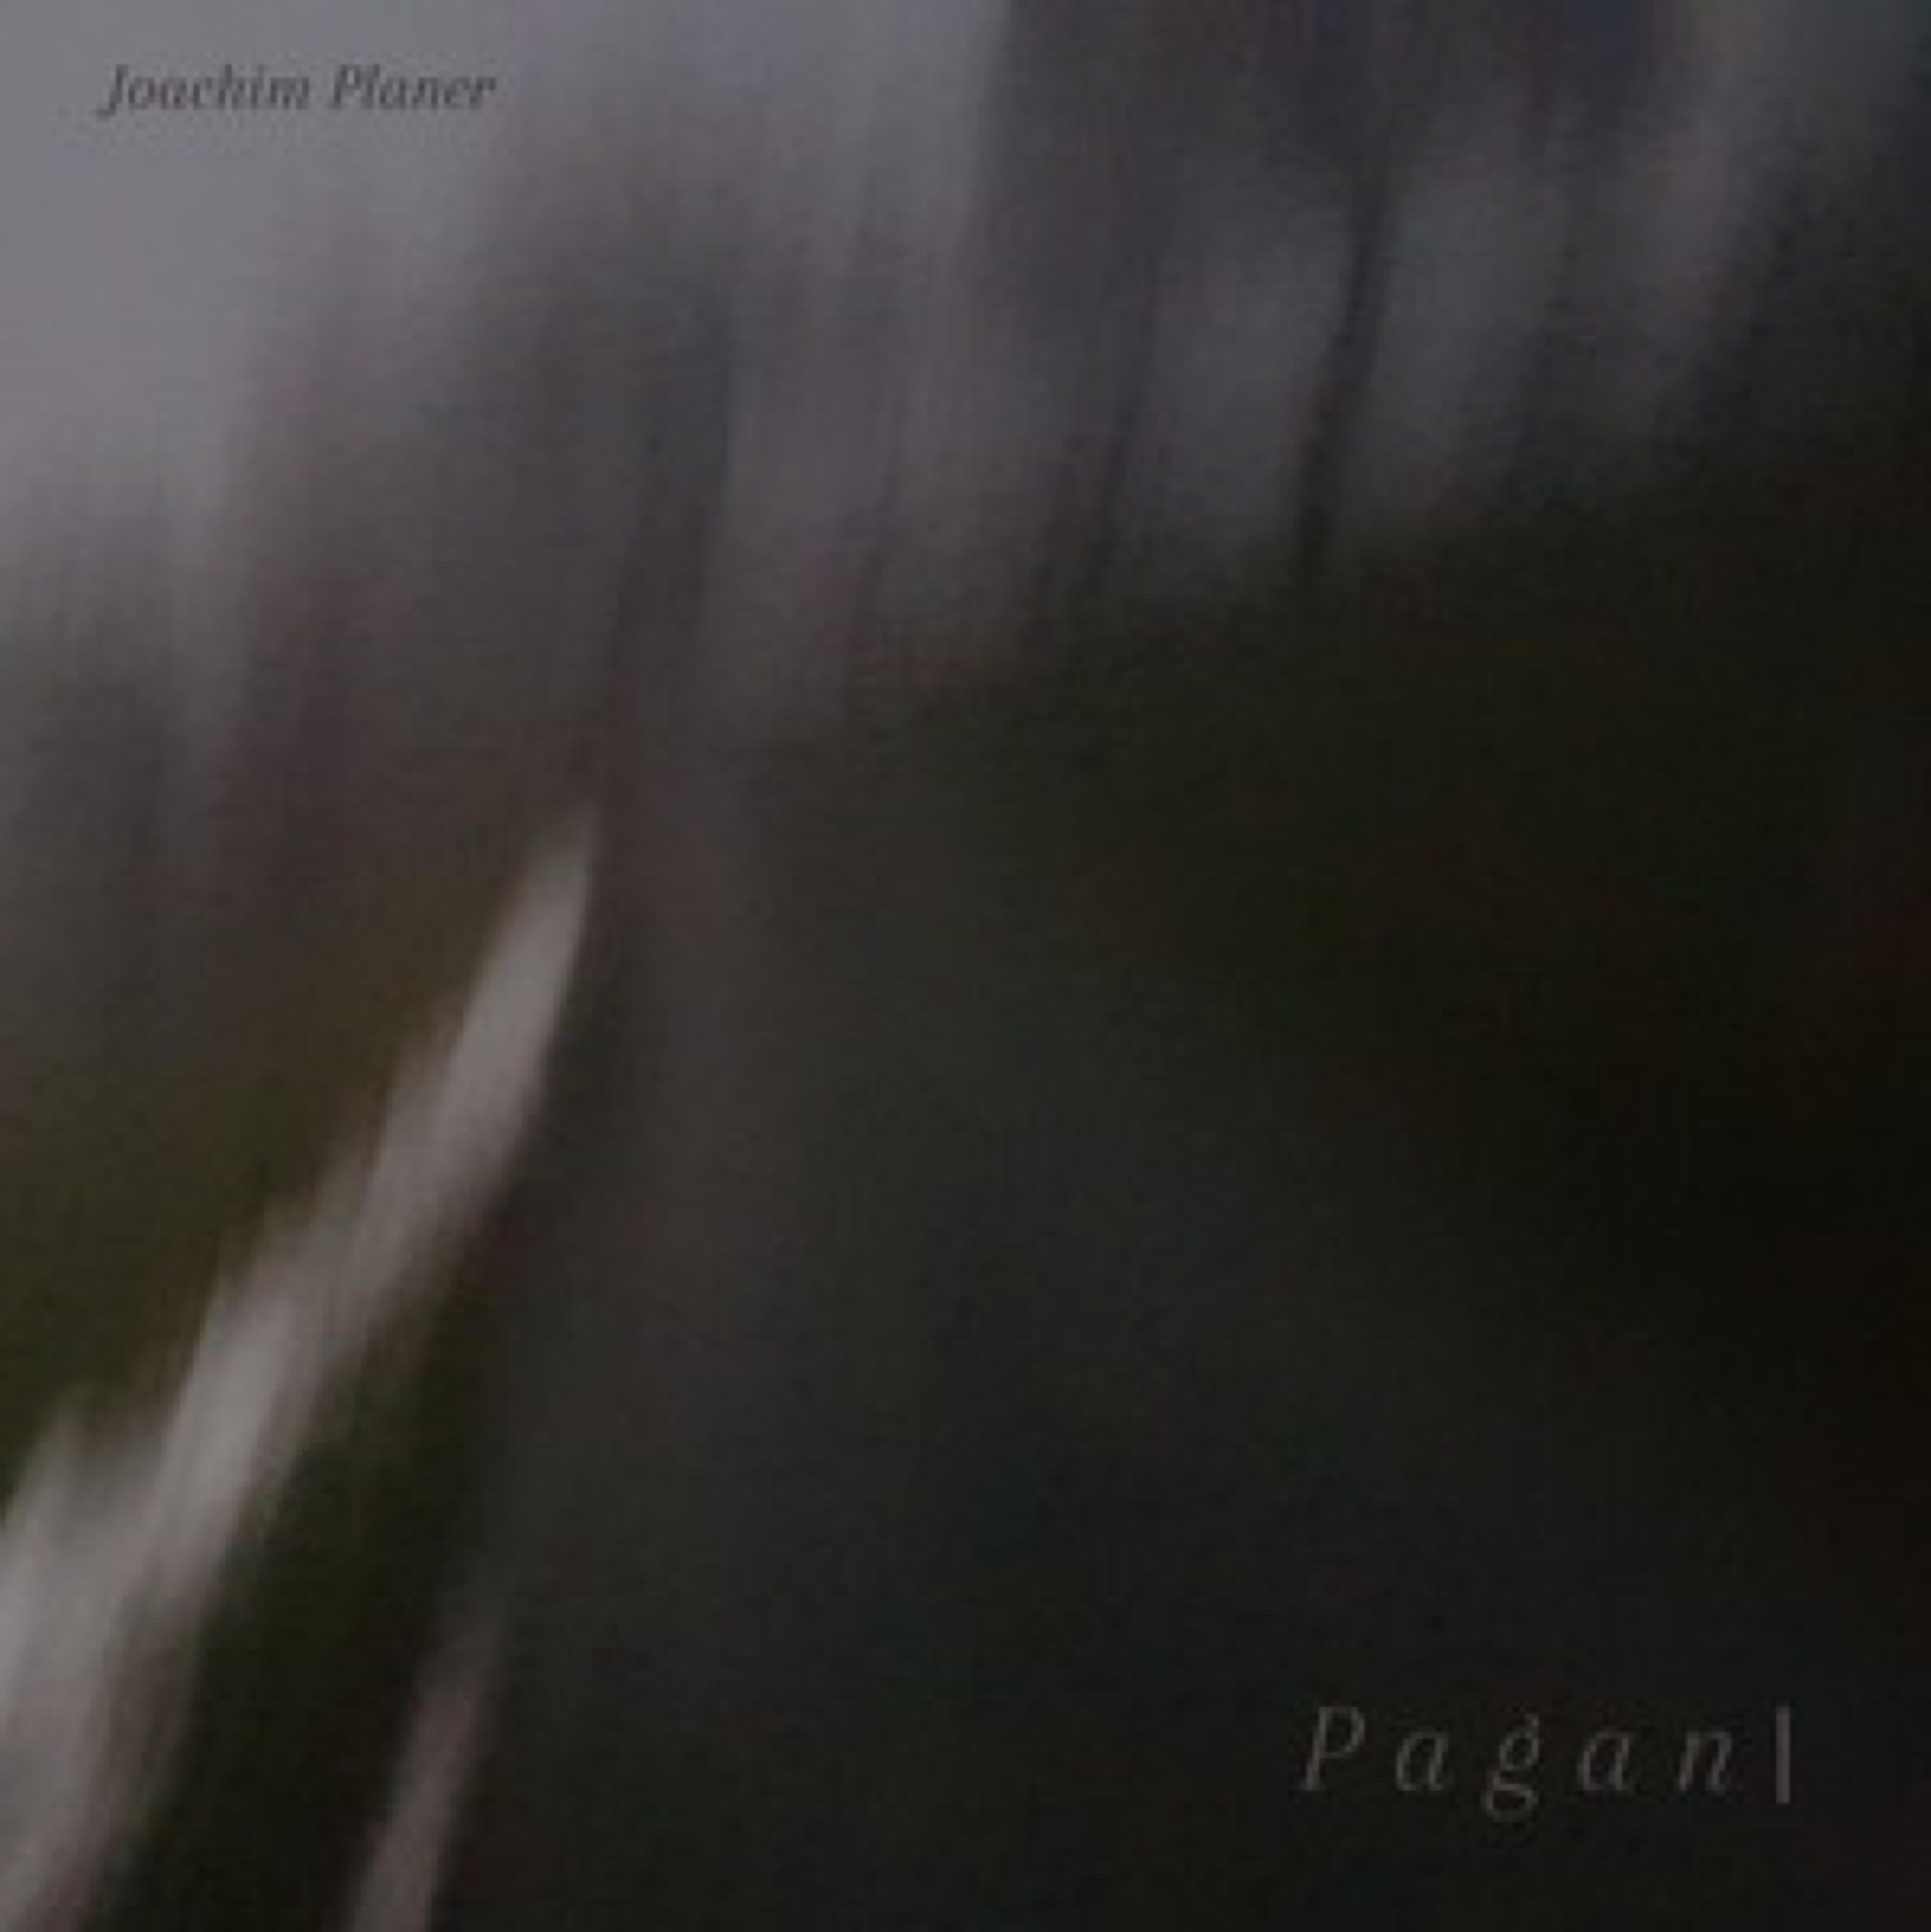 Düster und – fallweise – mit starker Wirkung auf die Vorstellungskraft: Die EP „Pagan I” von Joachim Planer.